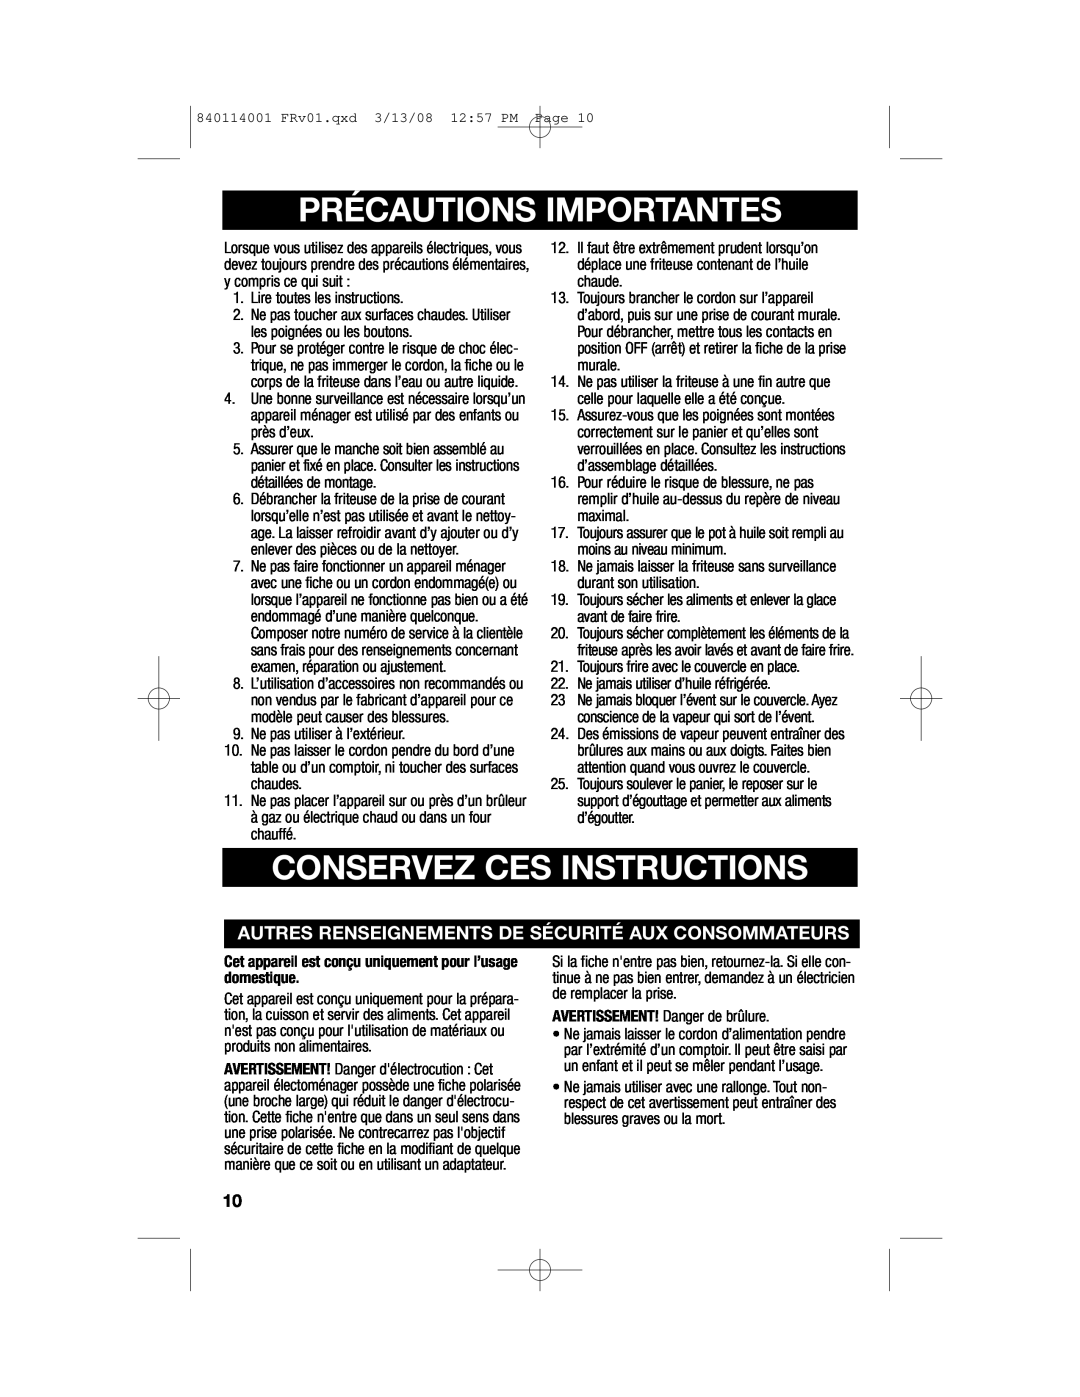 Hamilton Beach 840114001 manual Précautions Importantes, Conservez Ces Instructions 